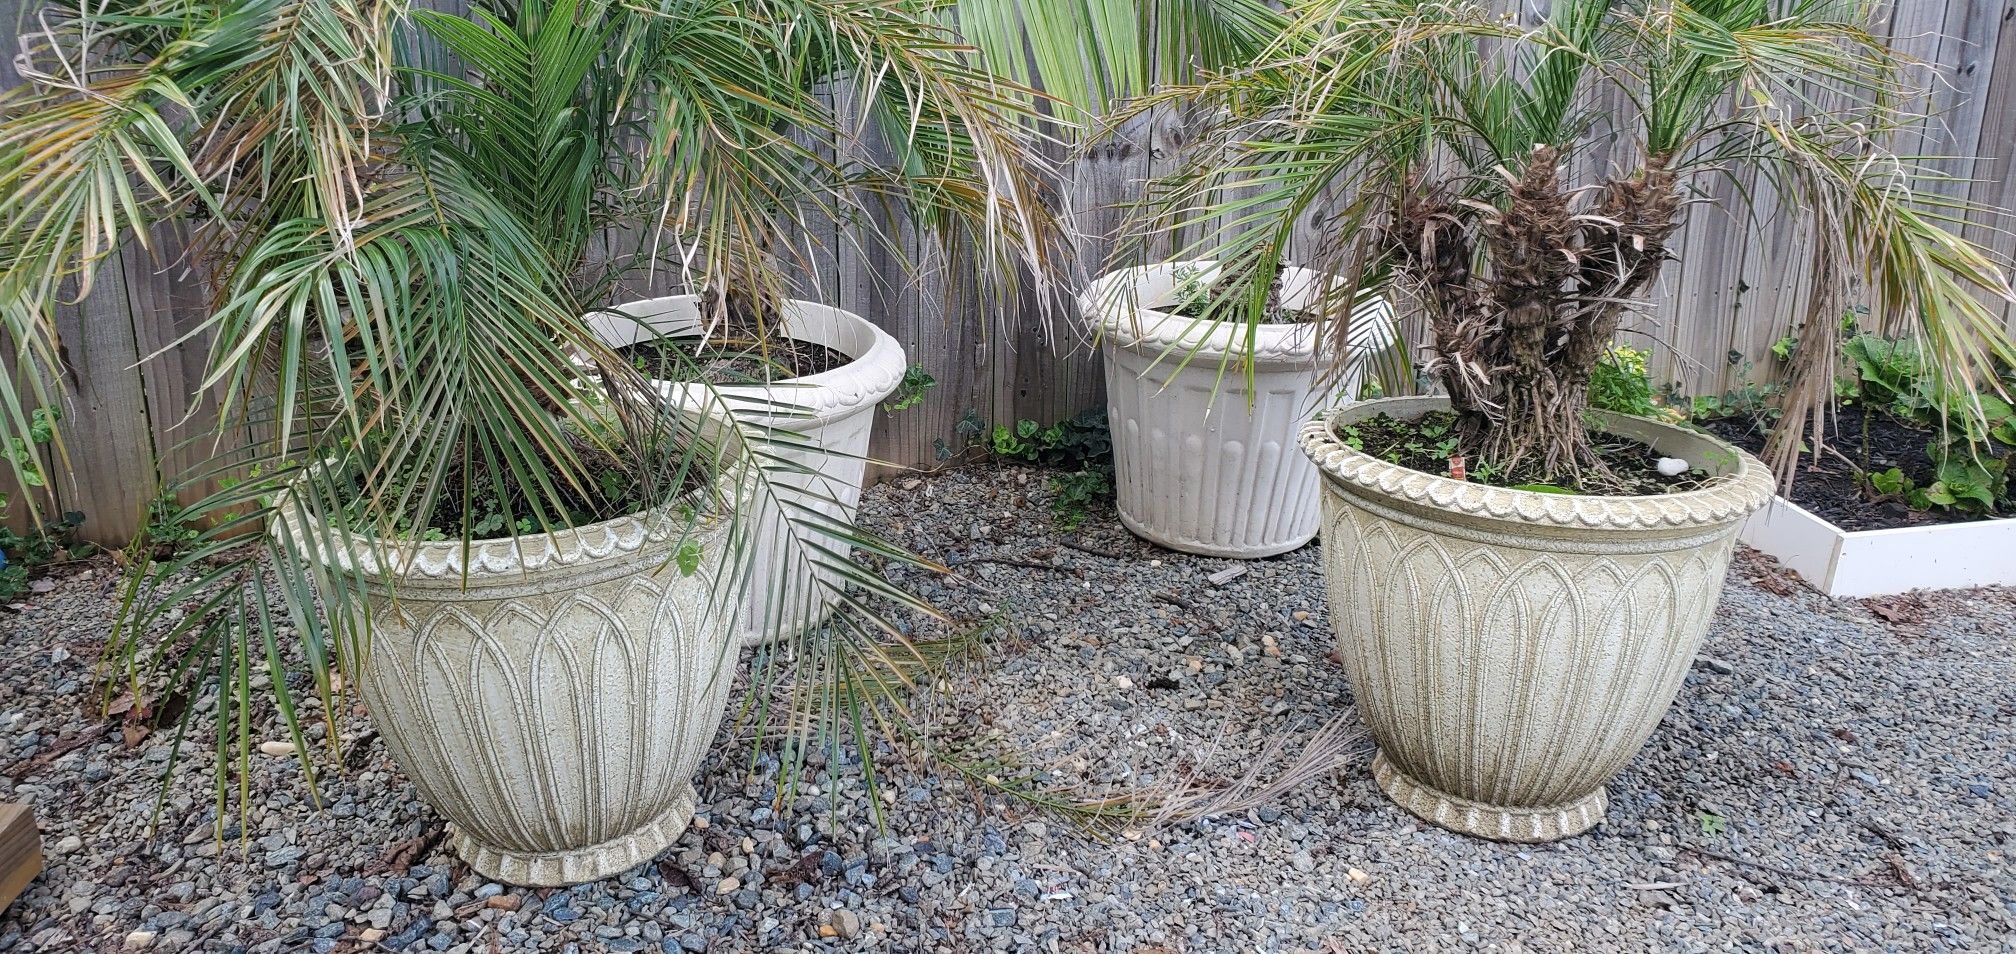 4 Plastic pots 2 f tall with plants